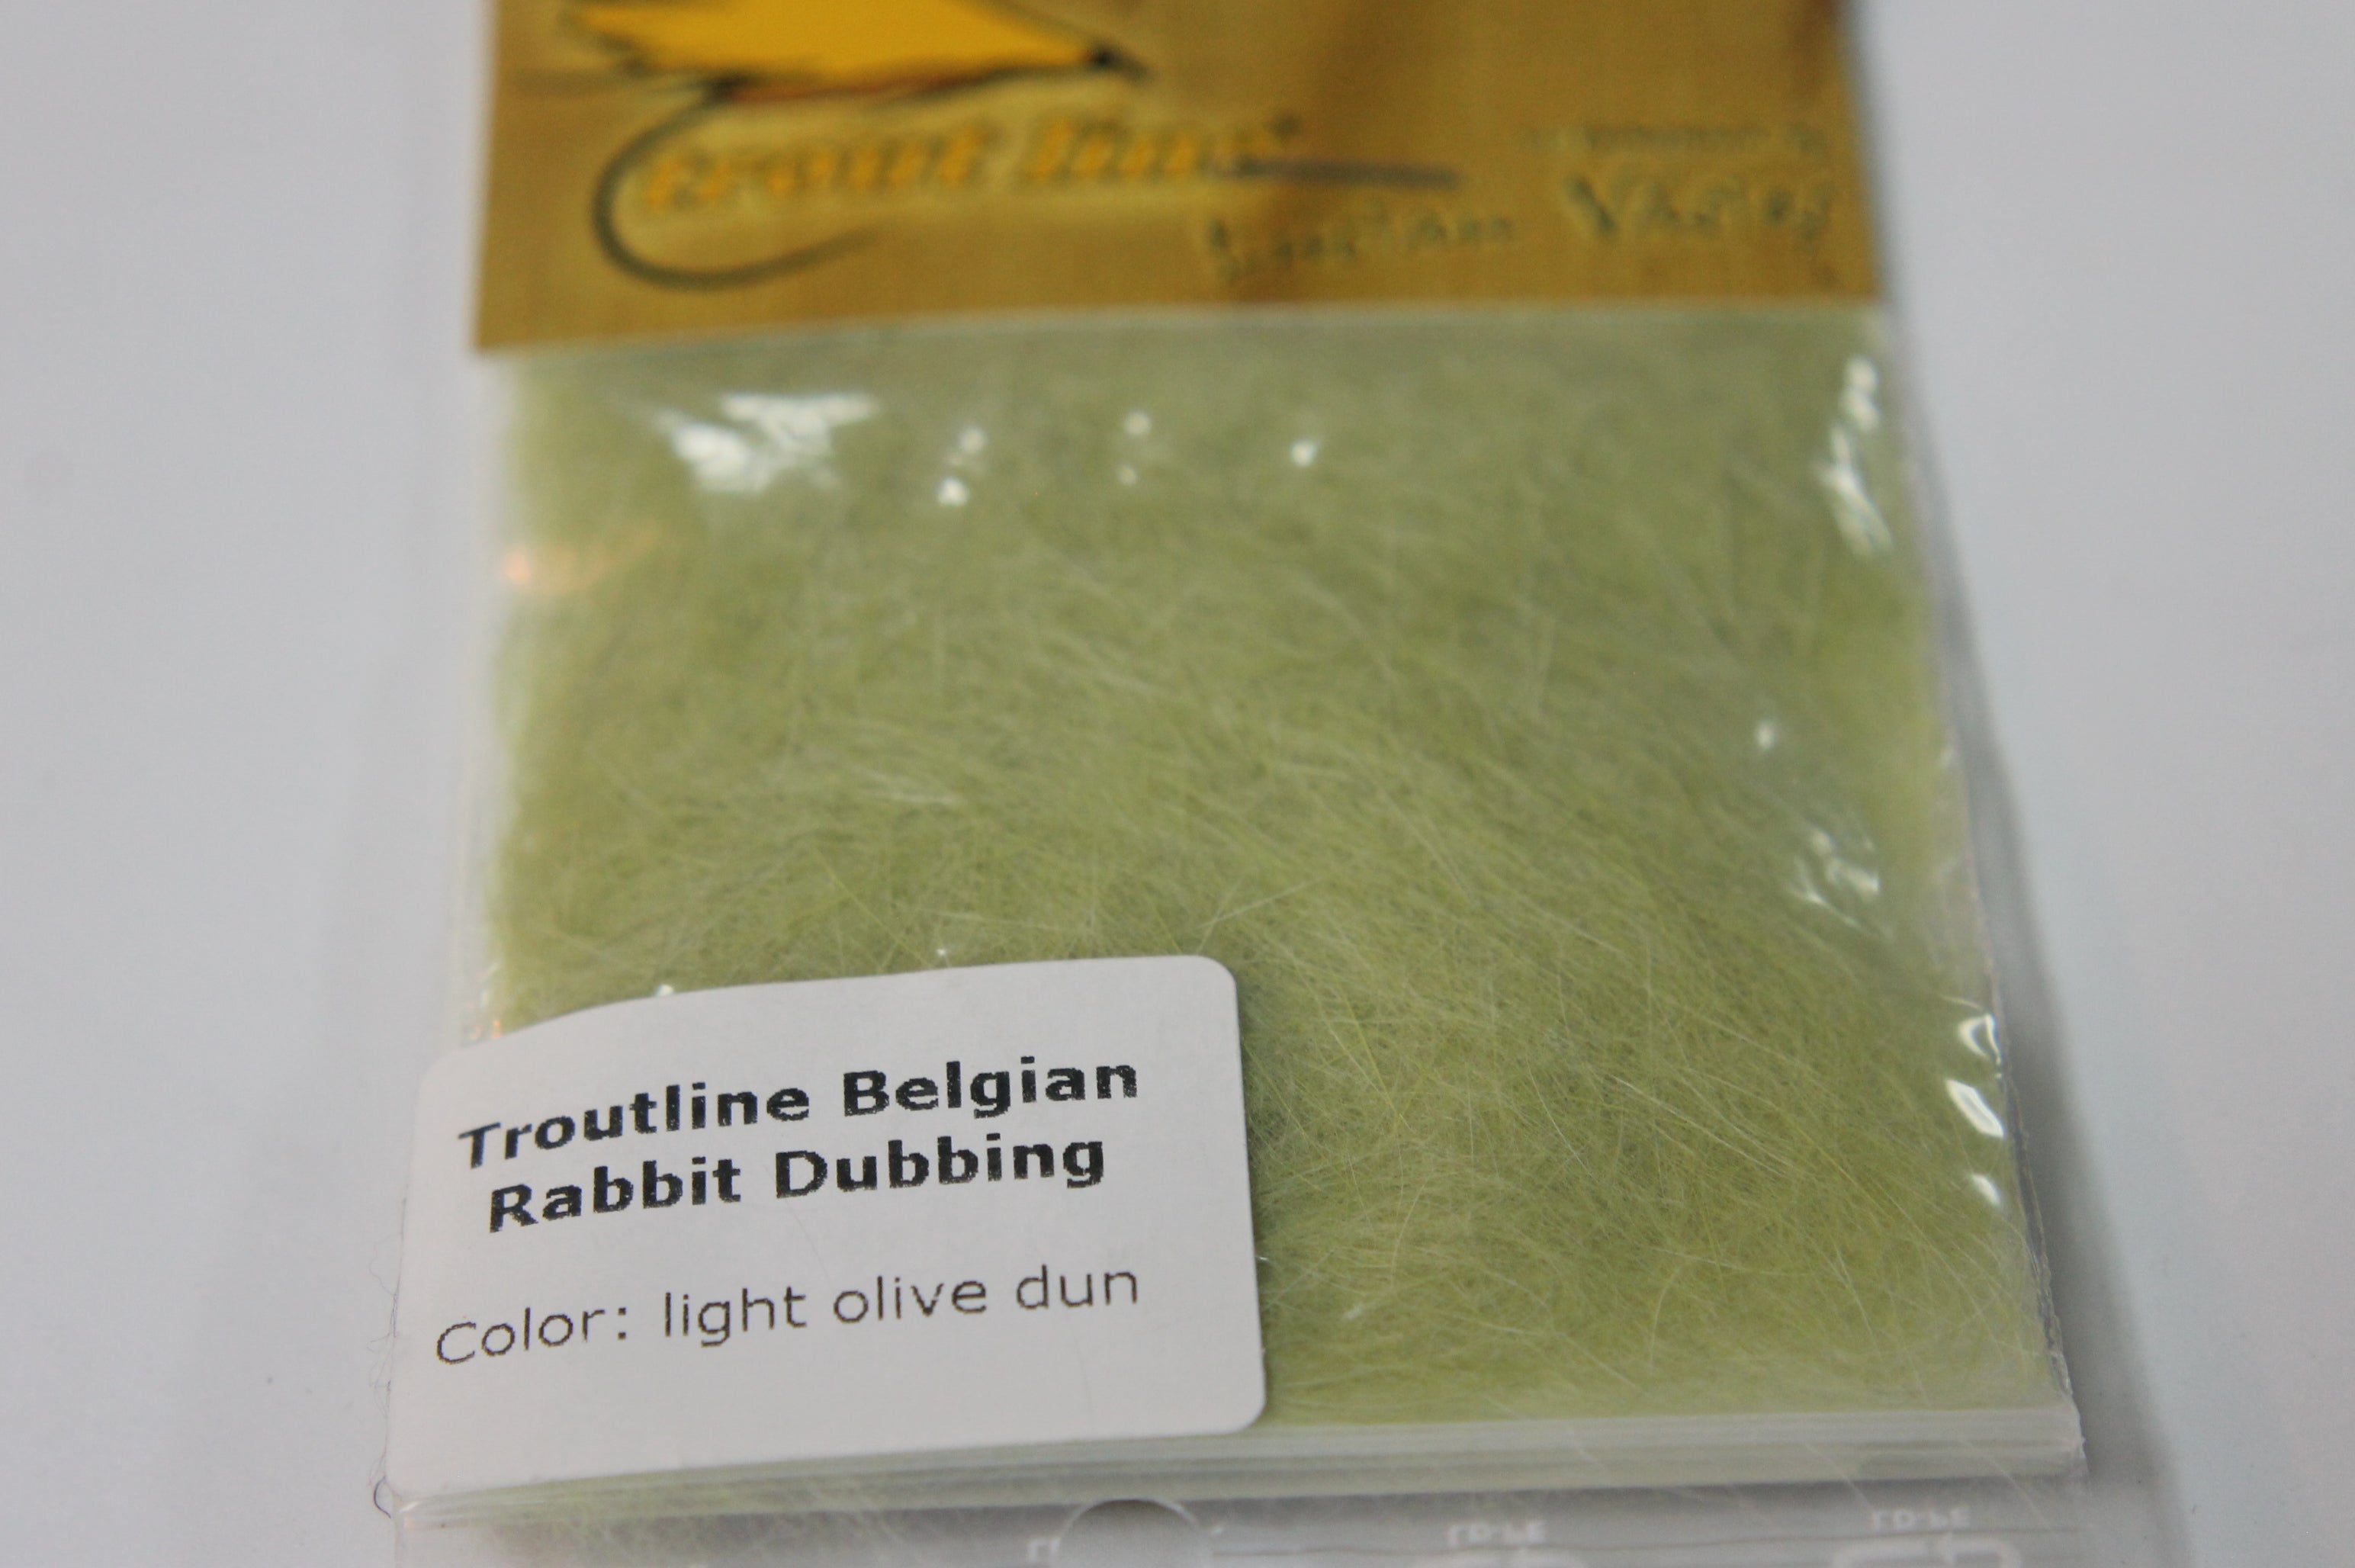 Troutline Belgian Rabbit Dubbing